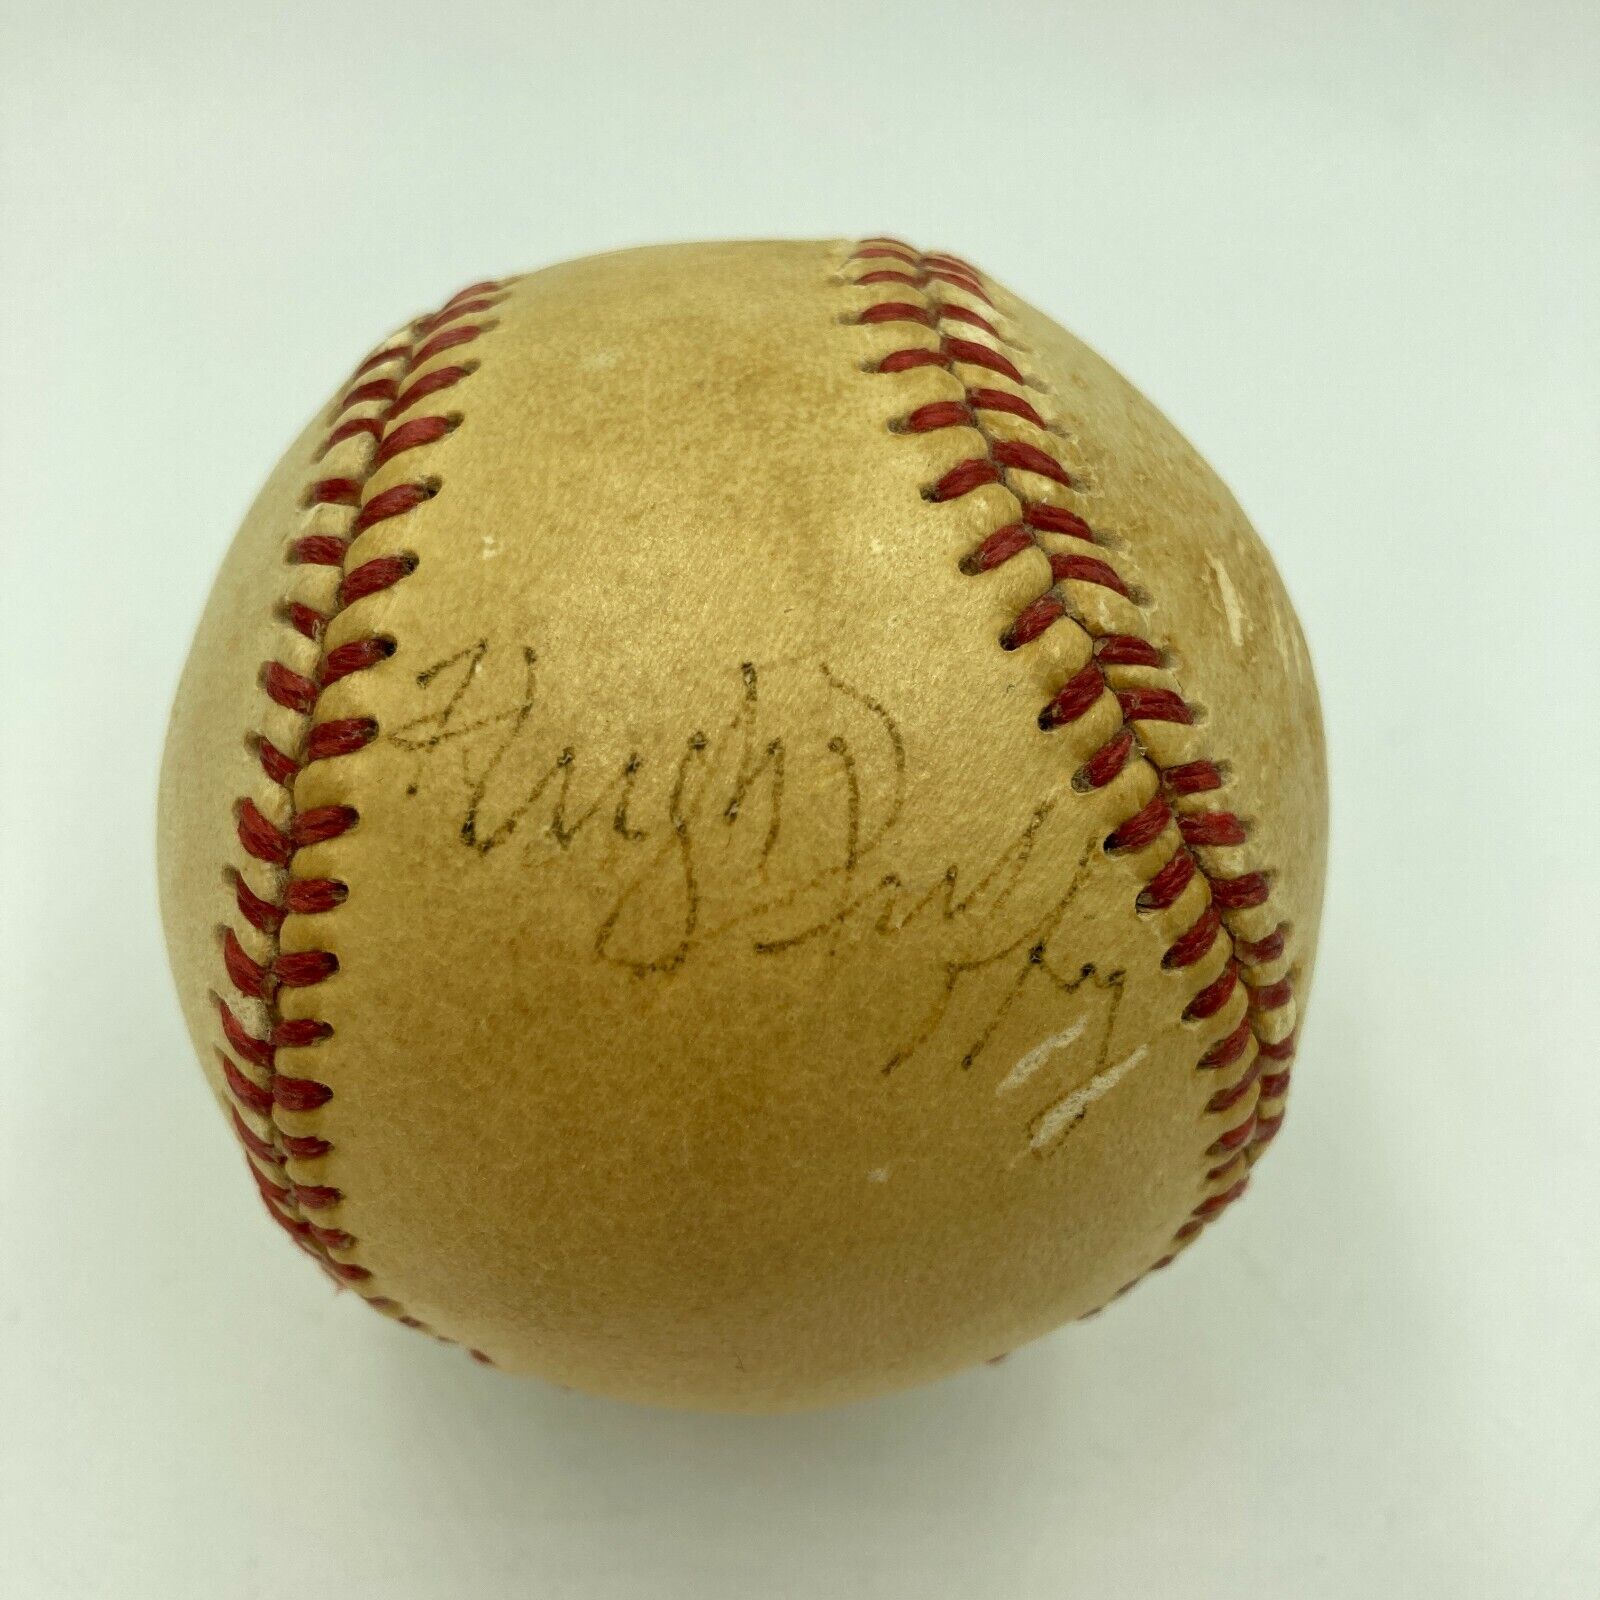  Hugh Duffy Single Signed 1940's American League Baseball PSA DNA COA